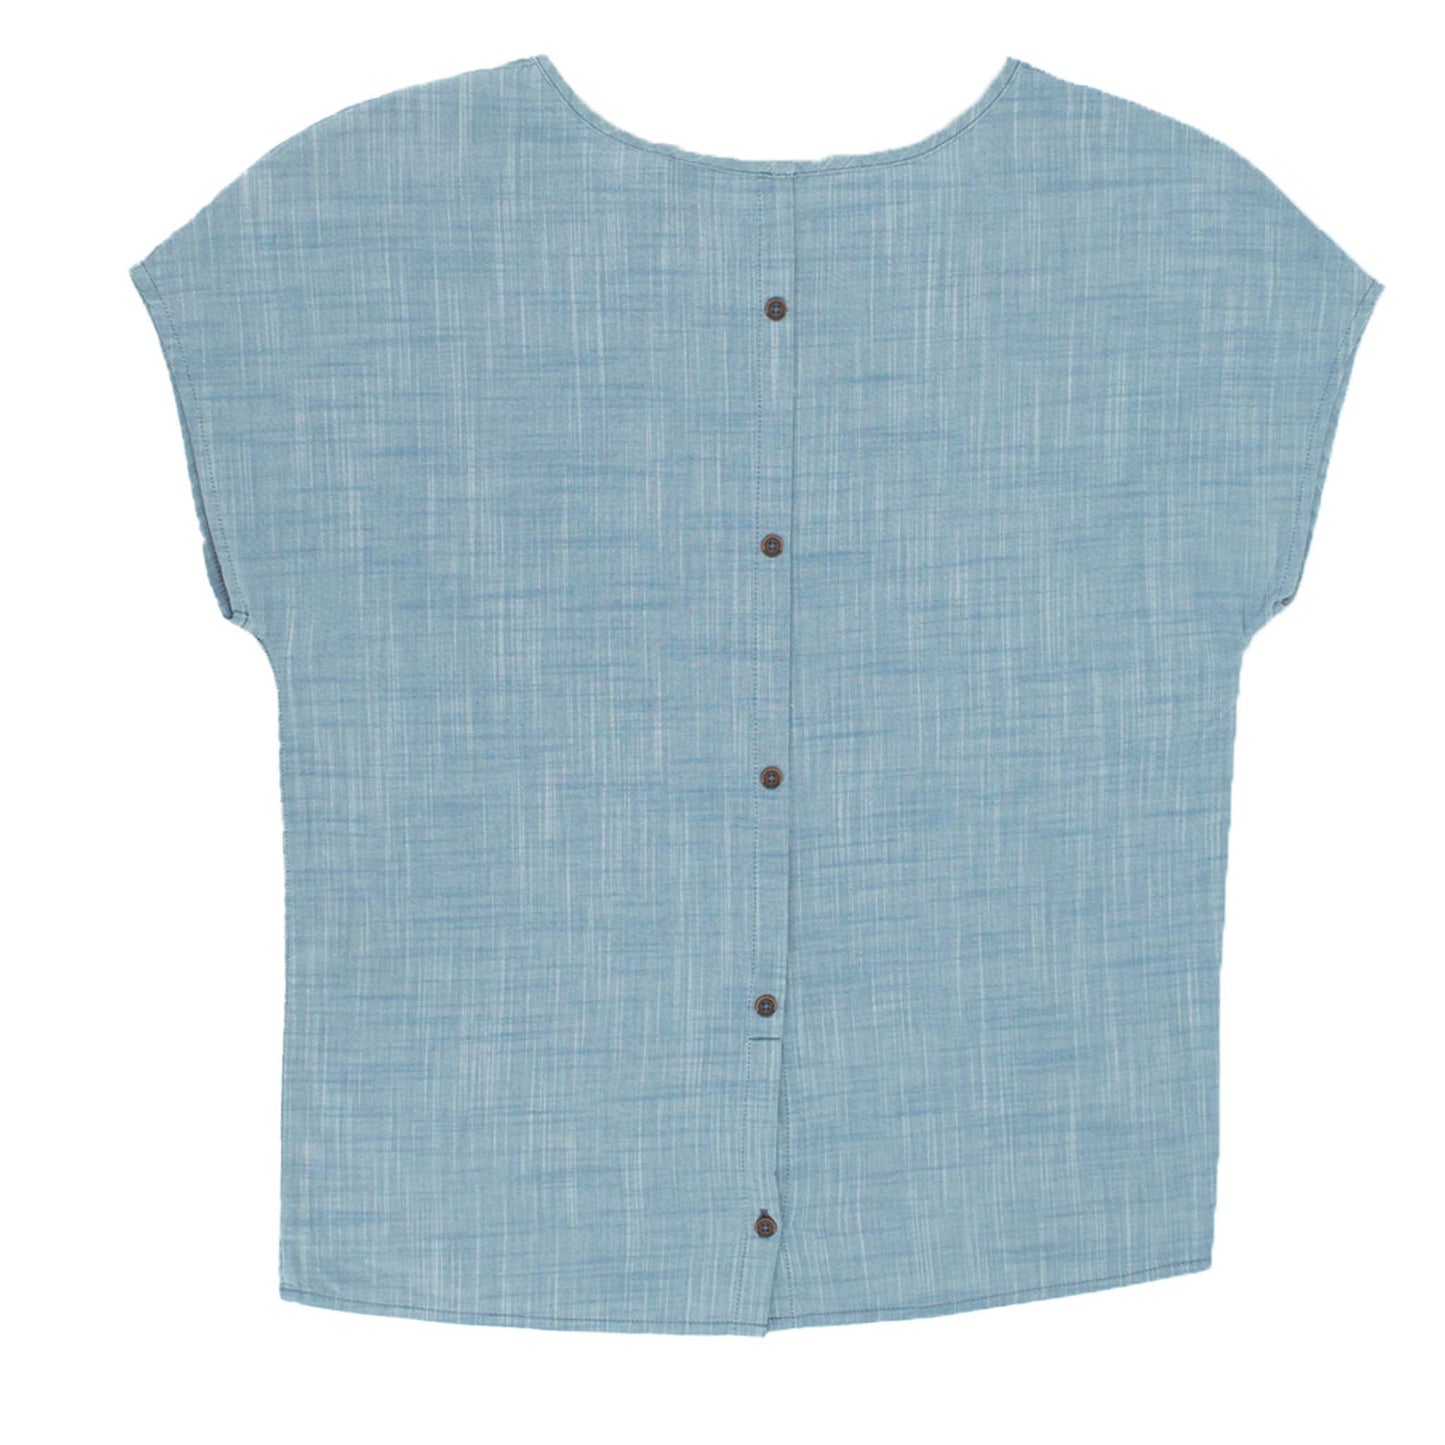 Jack Wolfskin Shirt Linen Look Top Damen kurzarm Bluse Blau 1402781-1588-2